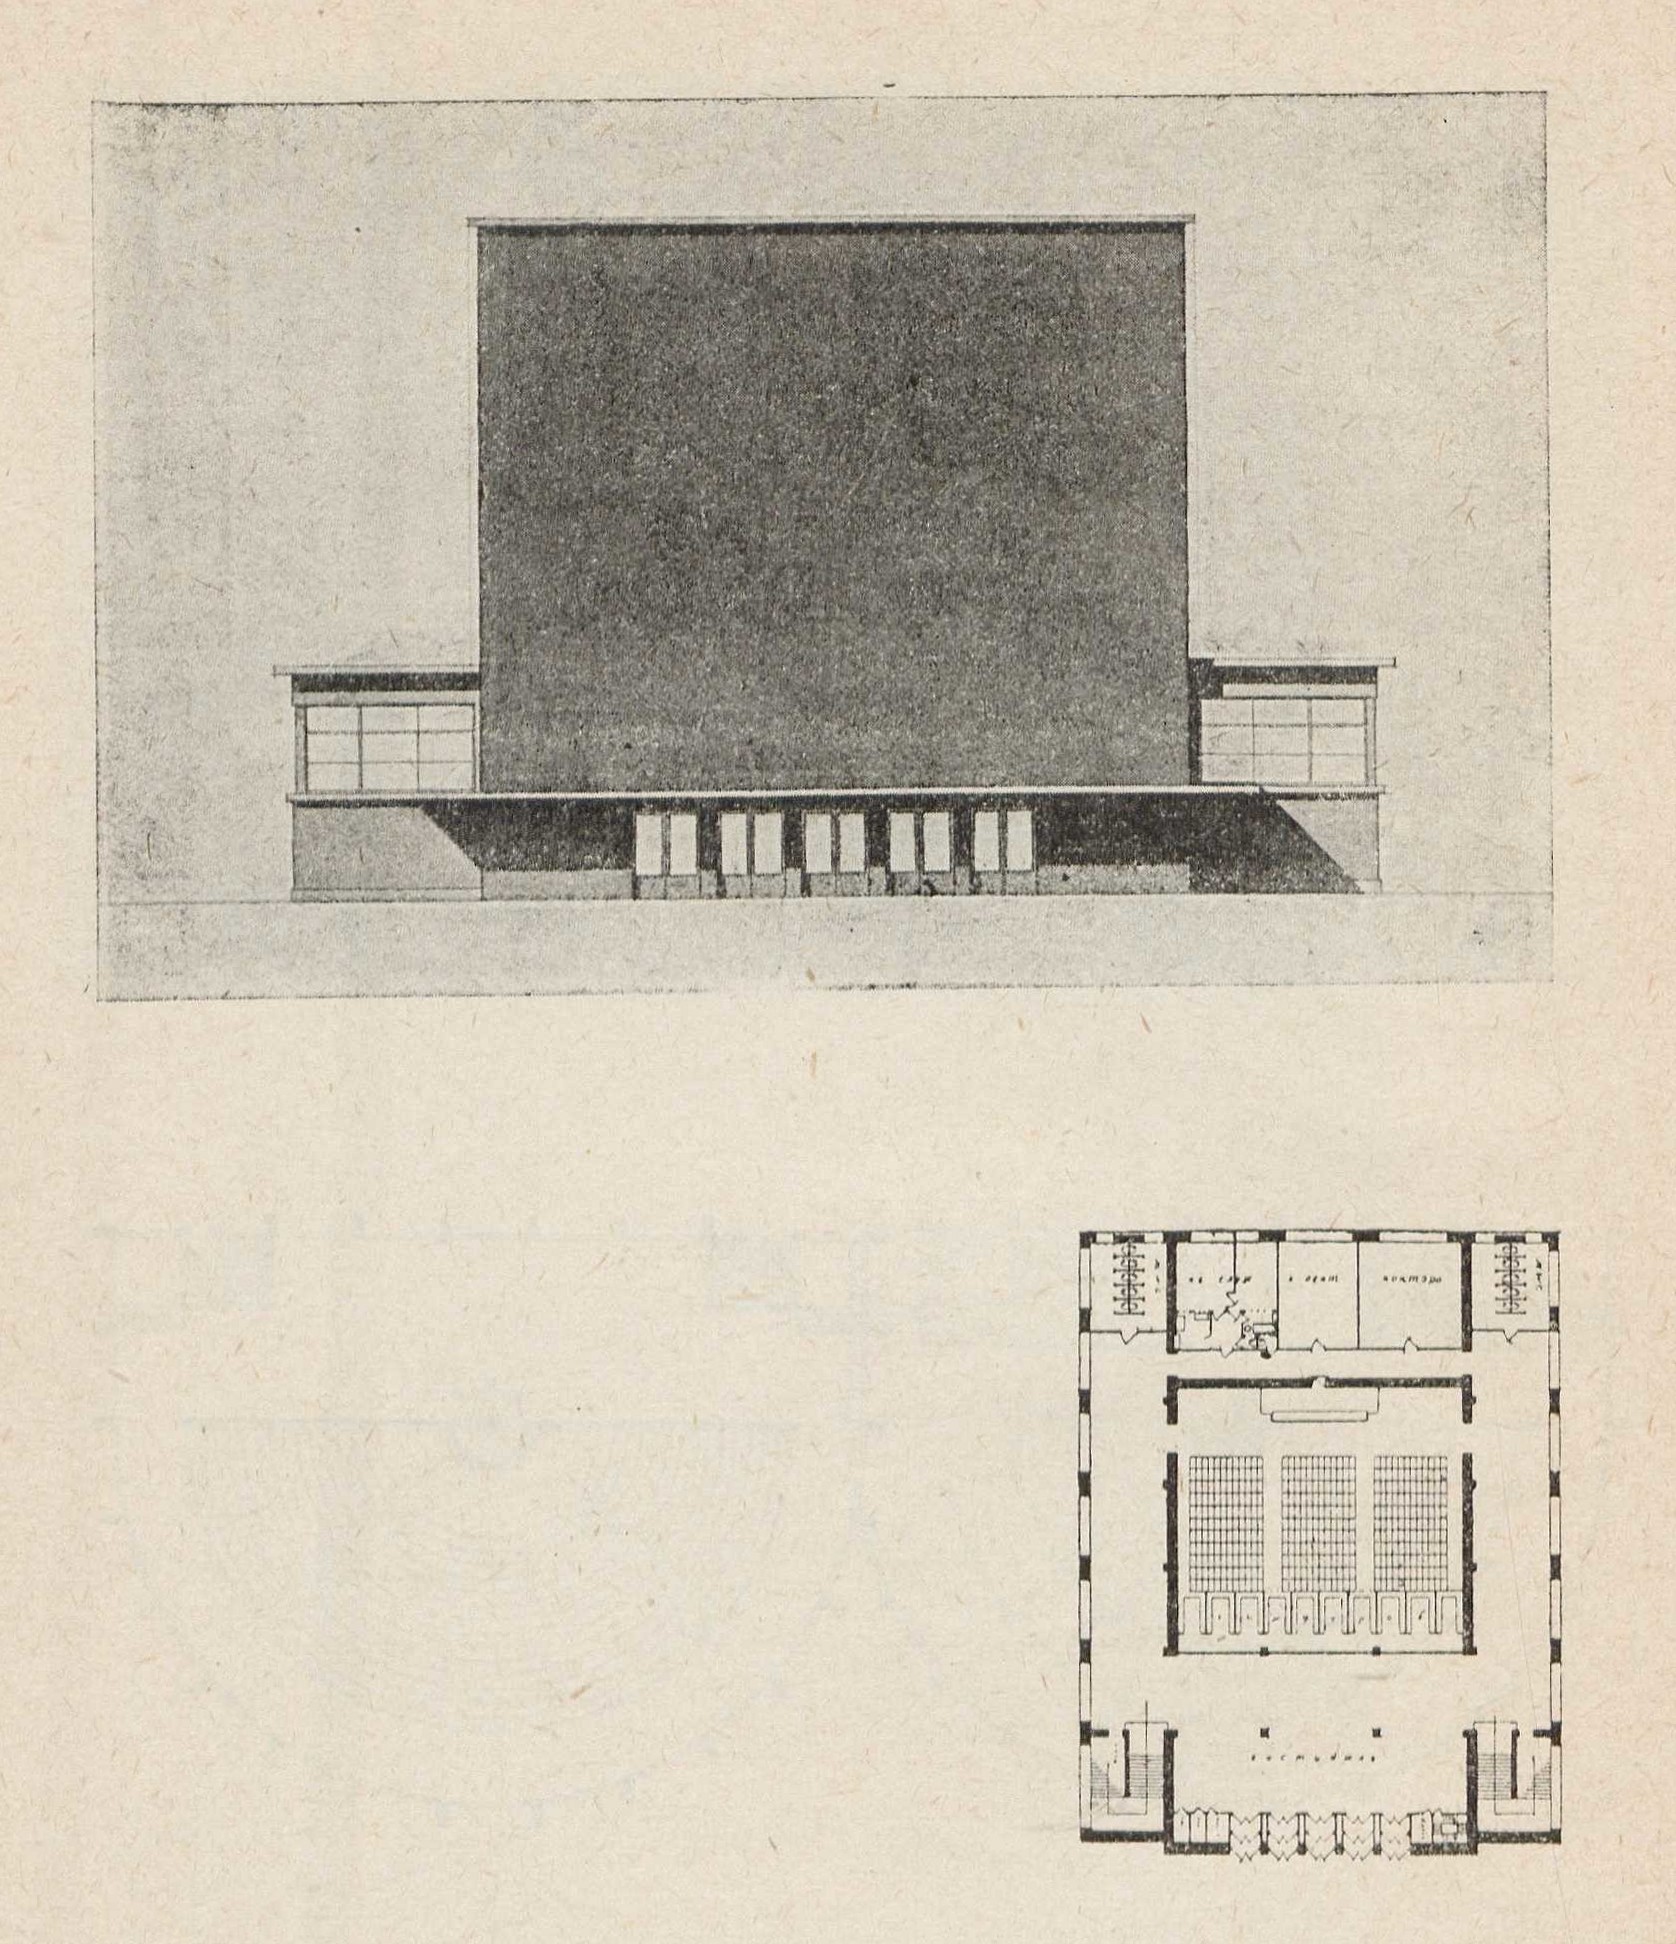 V курс. Проект с конструктивным расчетом. Аудитория на 700 человек — А. Ф. Хряков. 1928